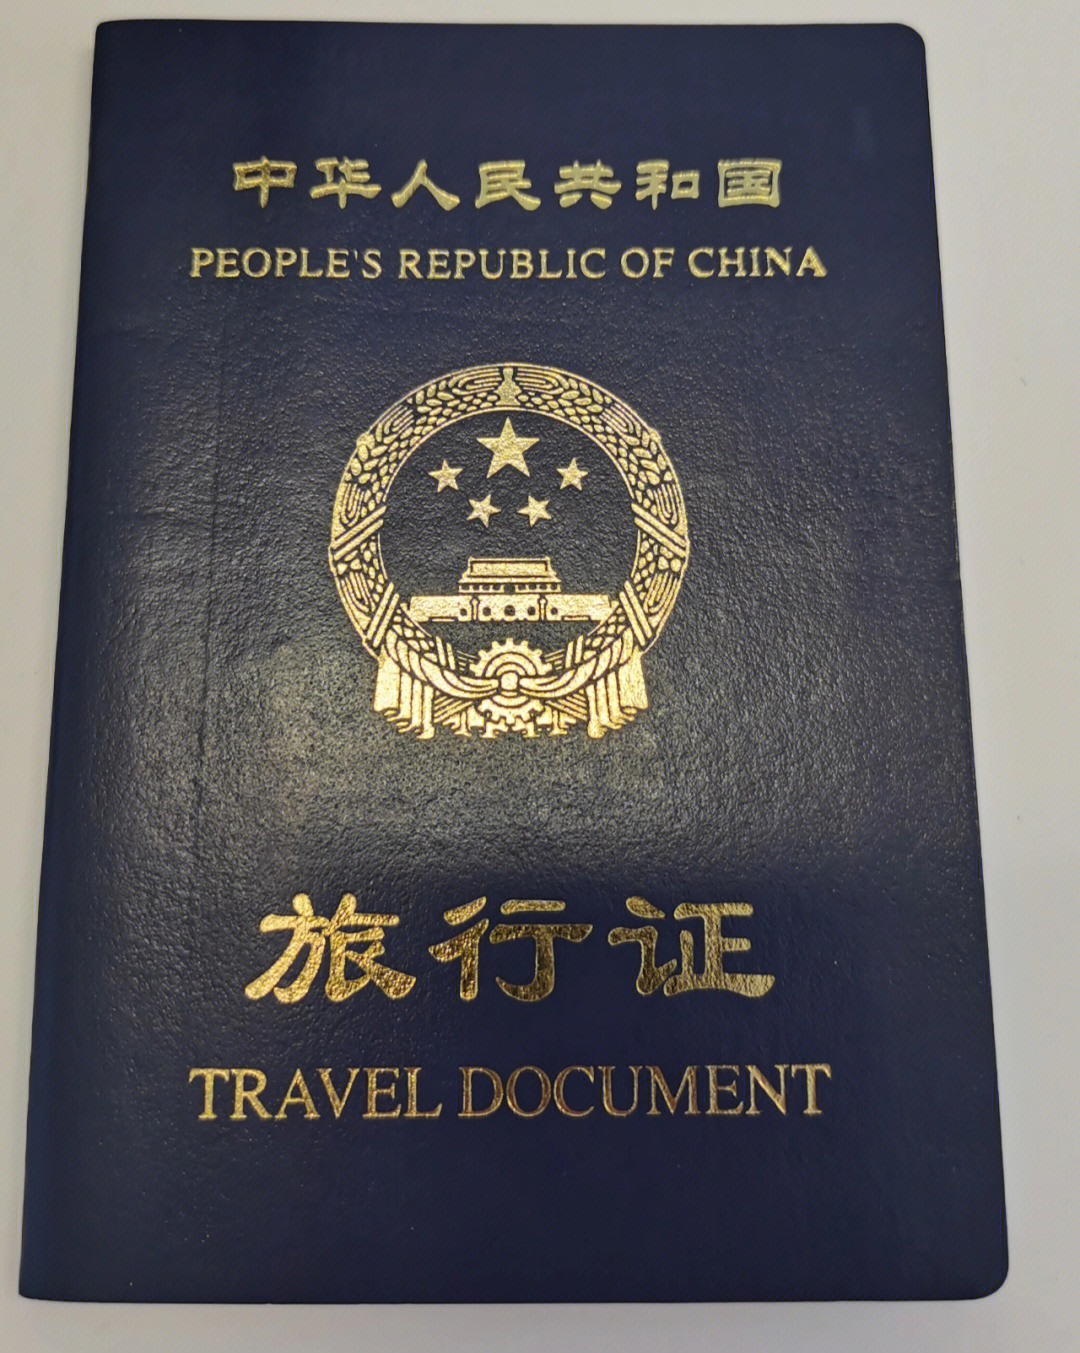 二宝旅行证过期换新的了附出入境通行证